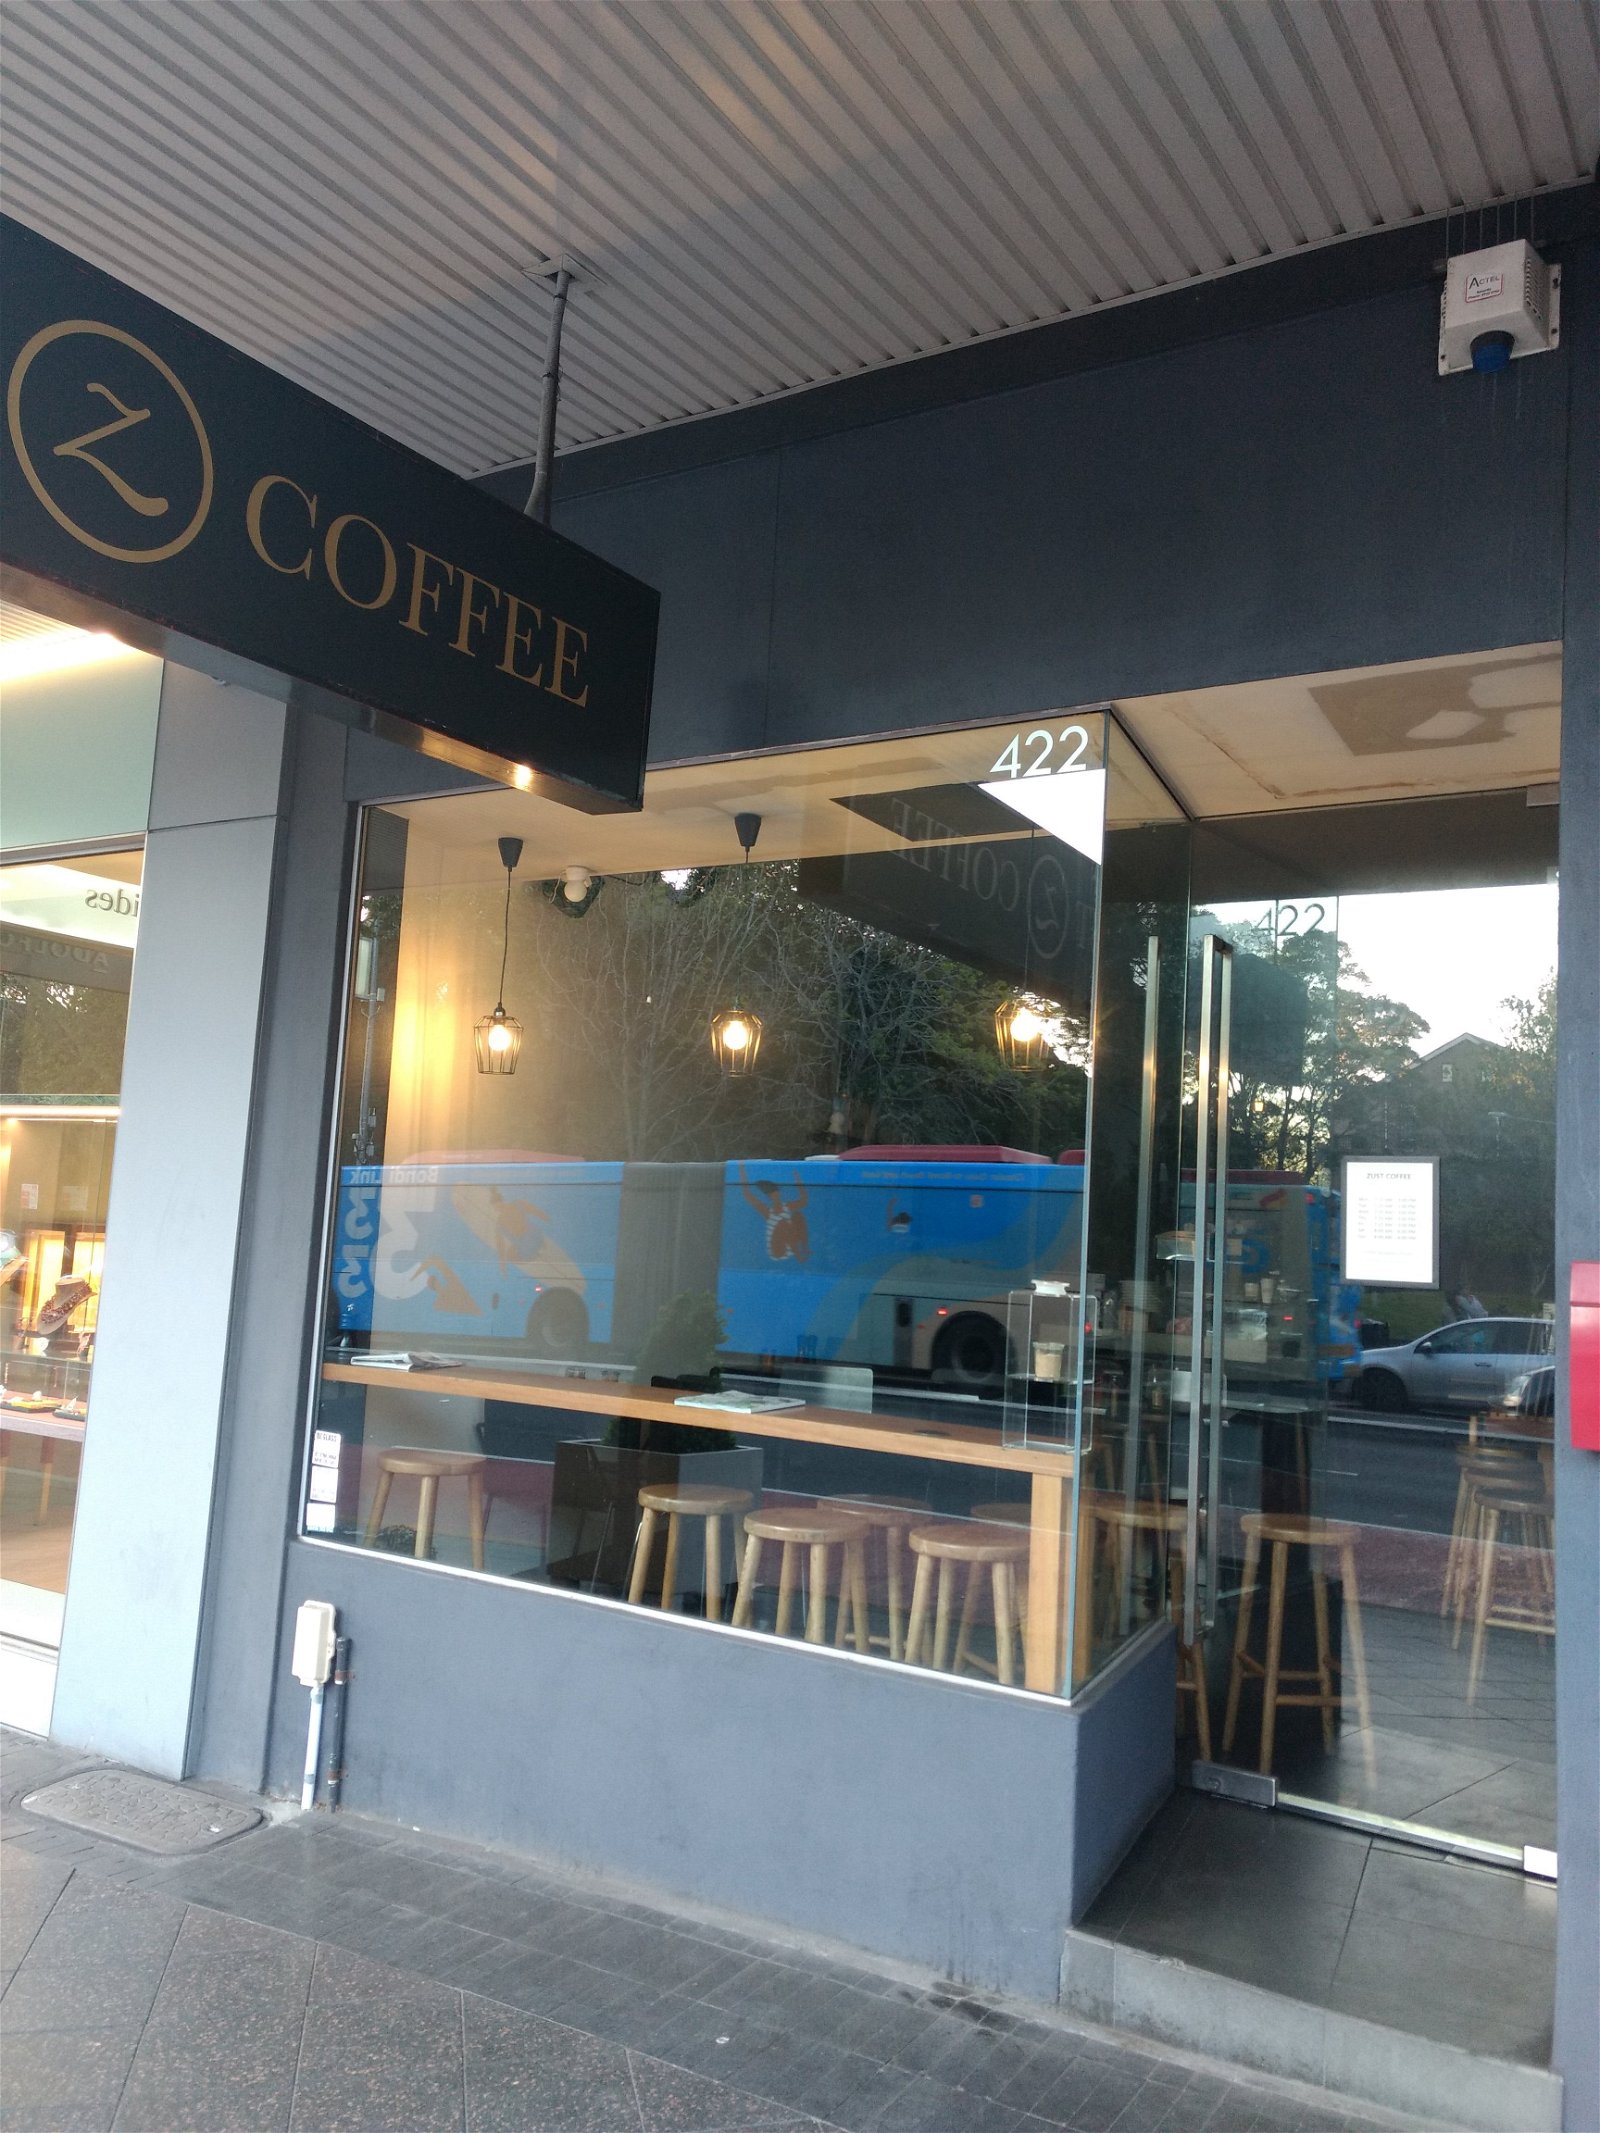 Zust coffee - Pubs Sydney